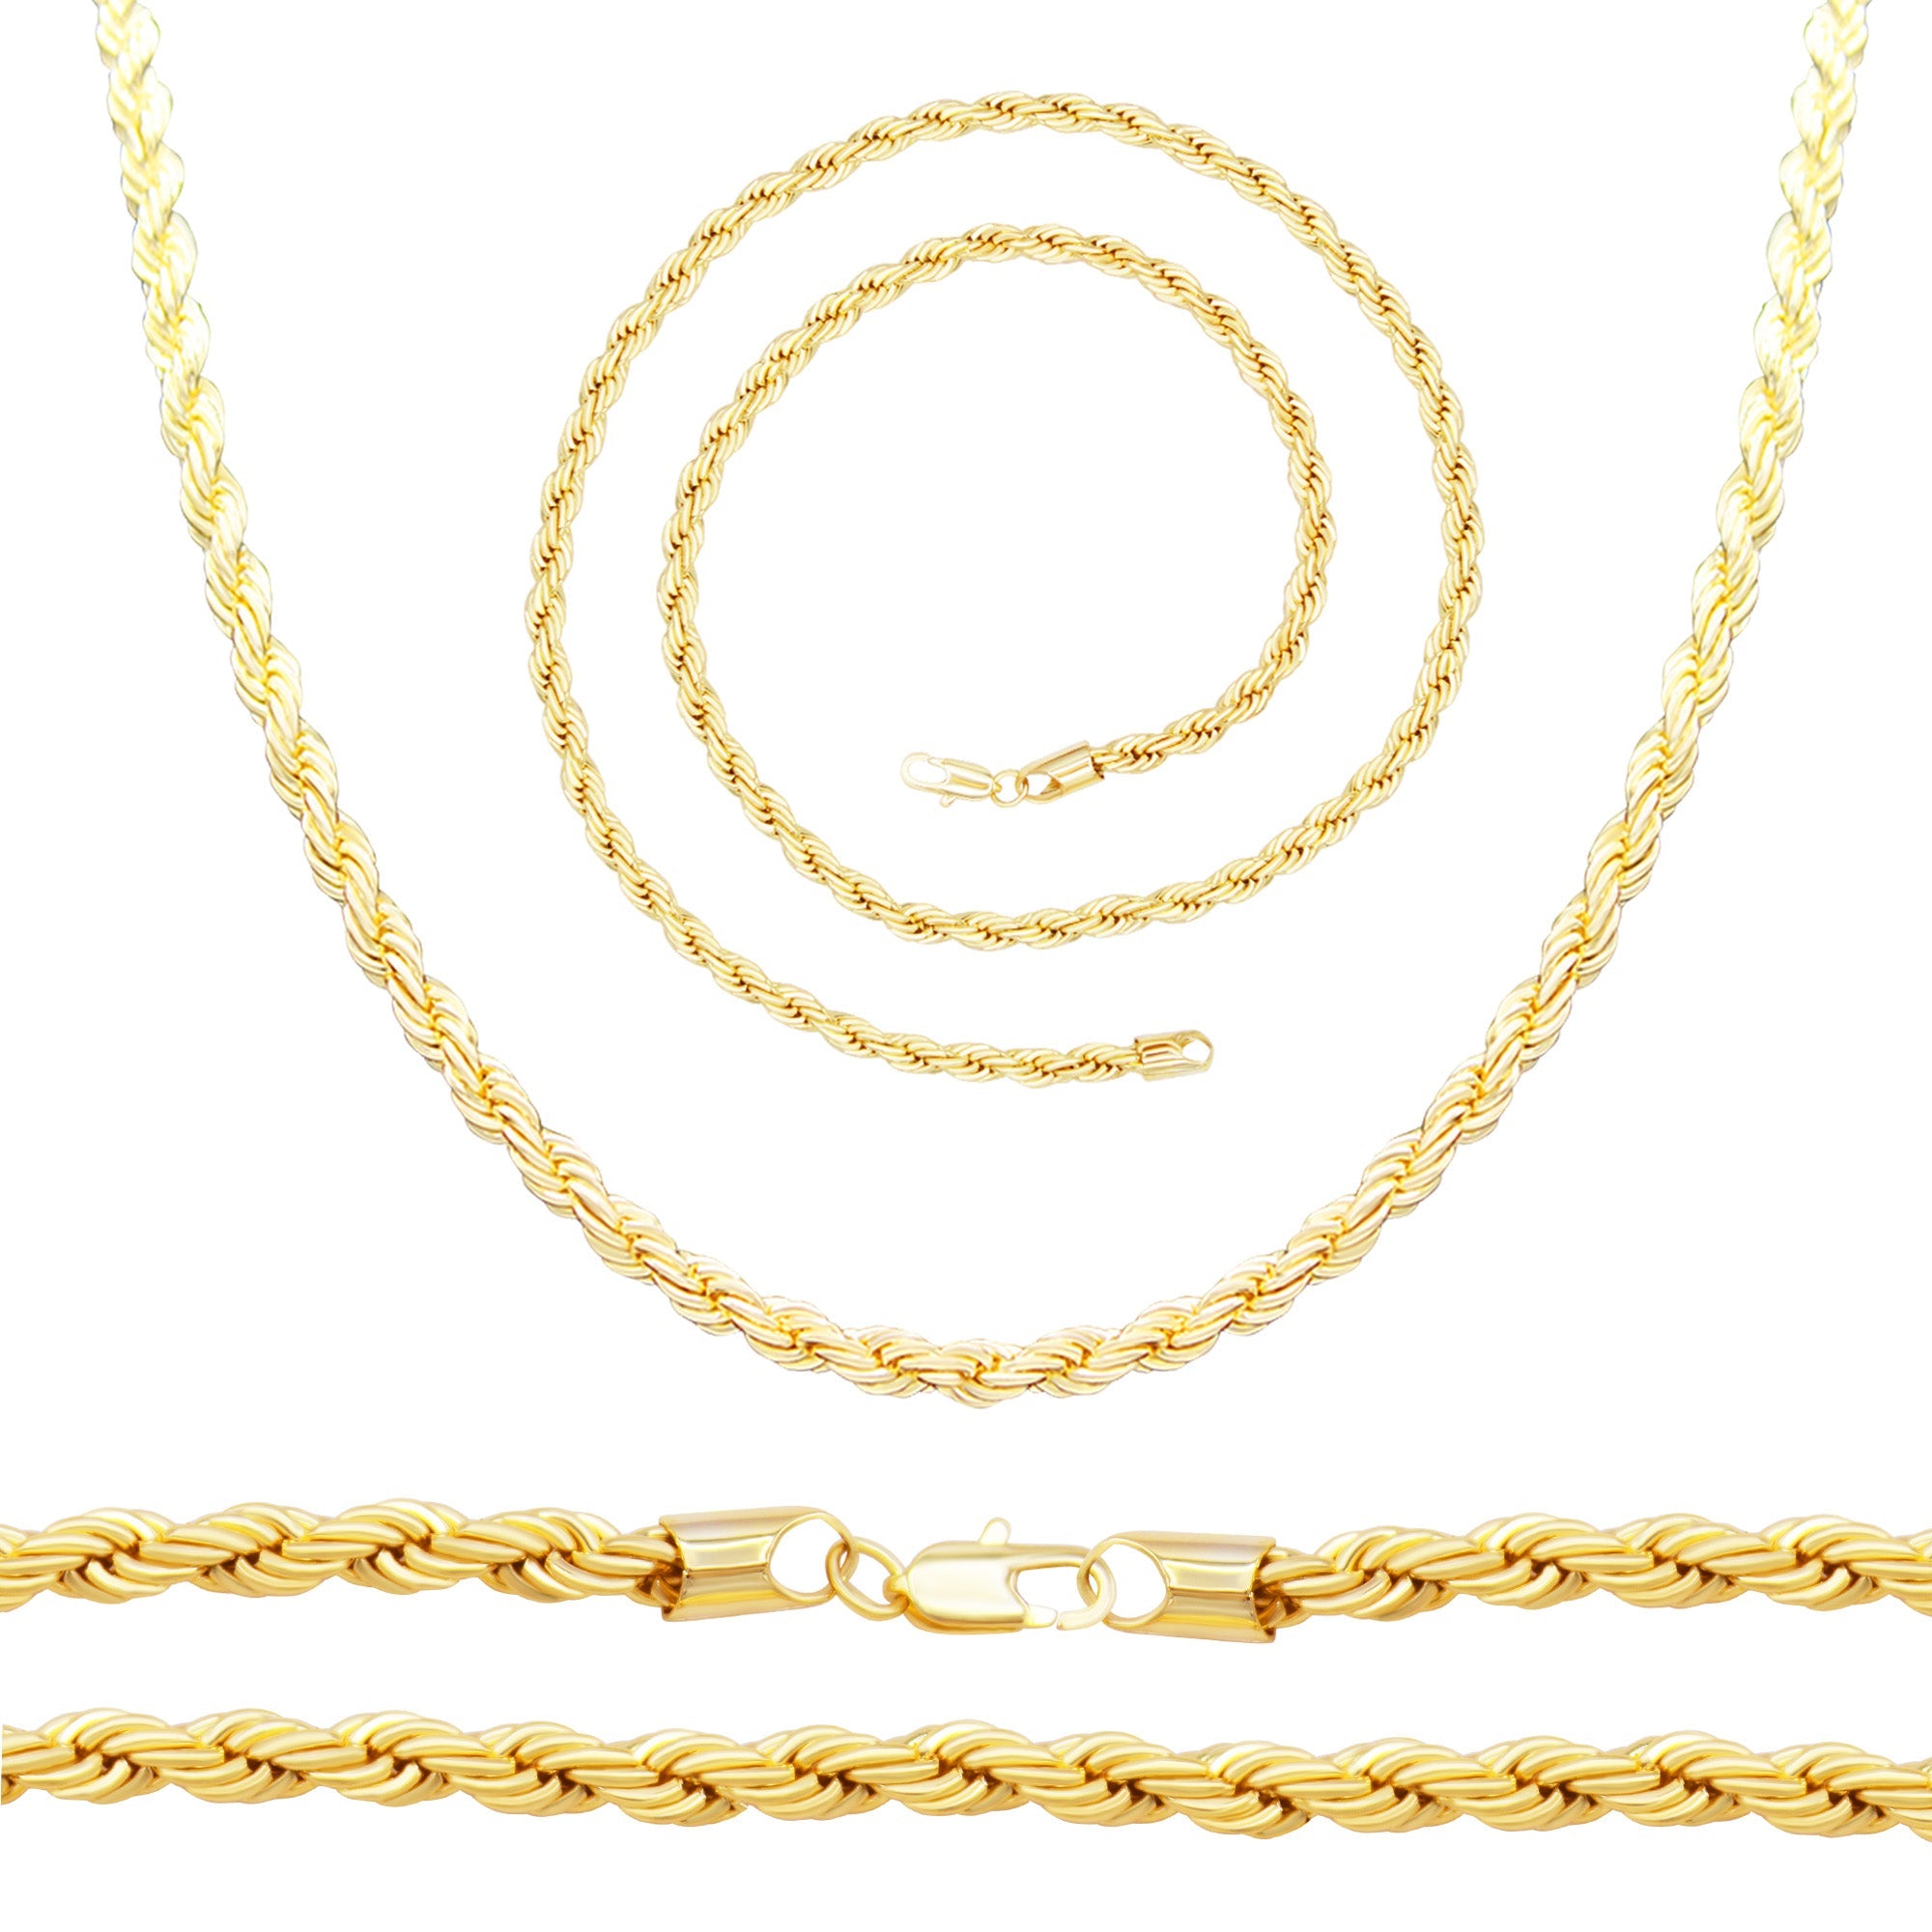 14K Gold Filled Rope Chain Necklace 24" Bracelet 8.5" Set for Men 5 - 6 mm